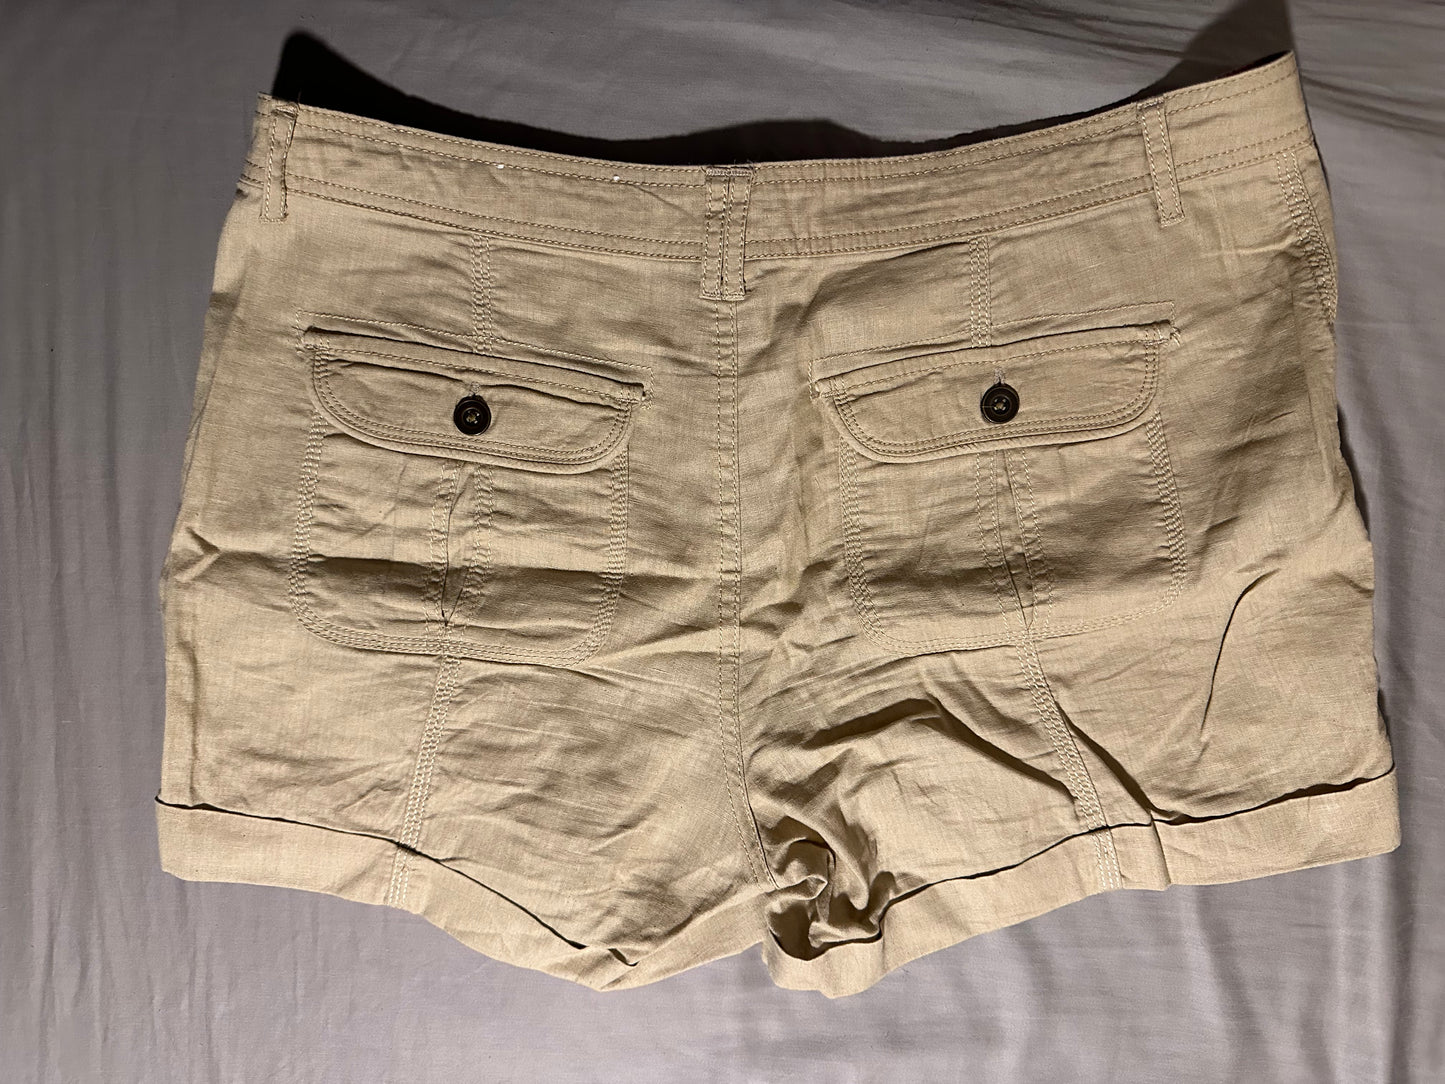 APT 9 size 14 shorts